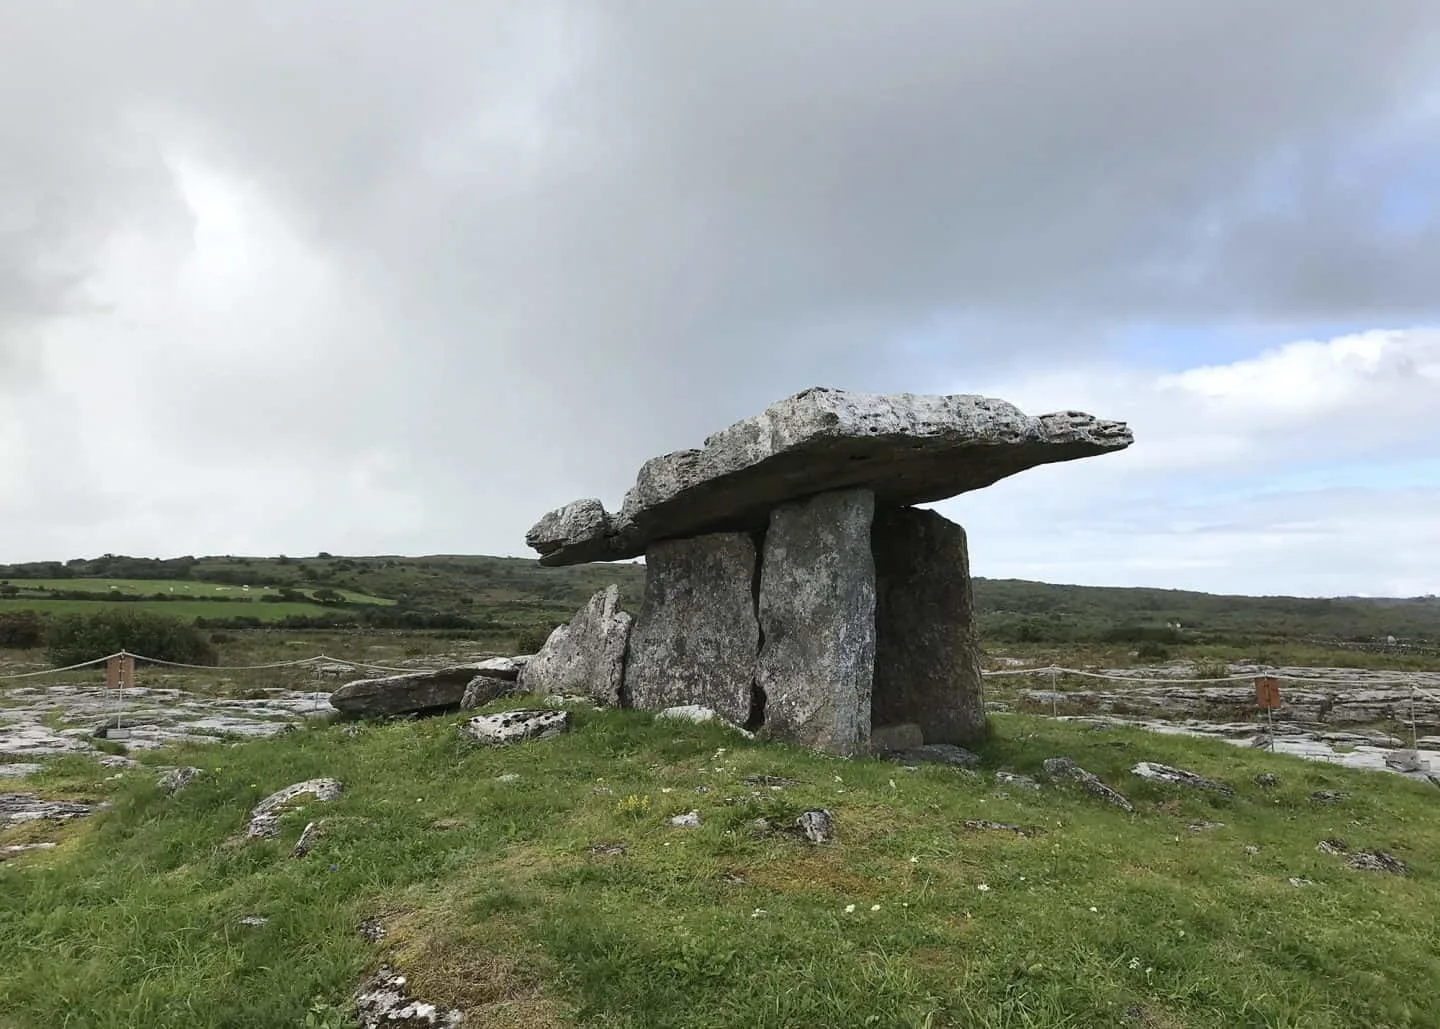 Poulnabrone Dolmen in Ireland